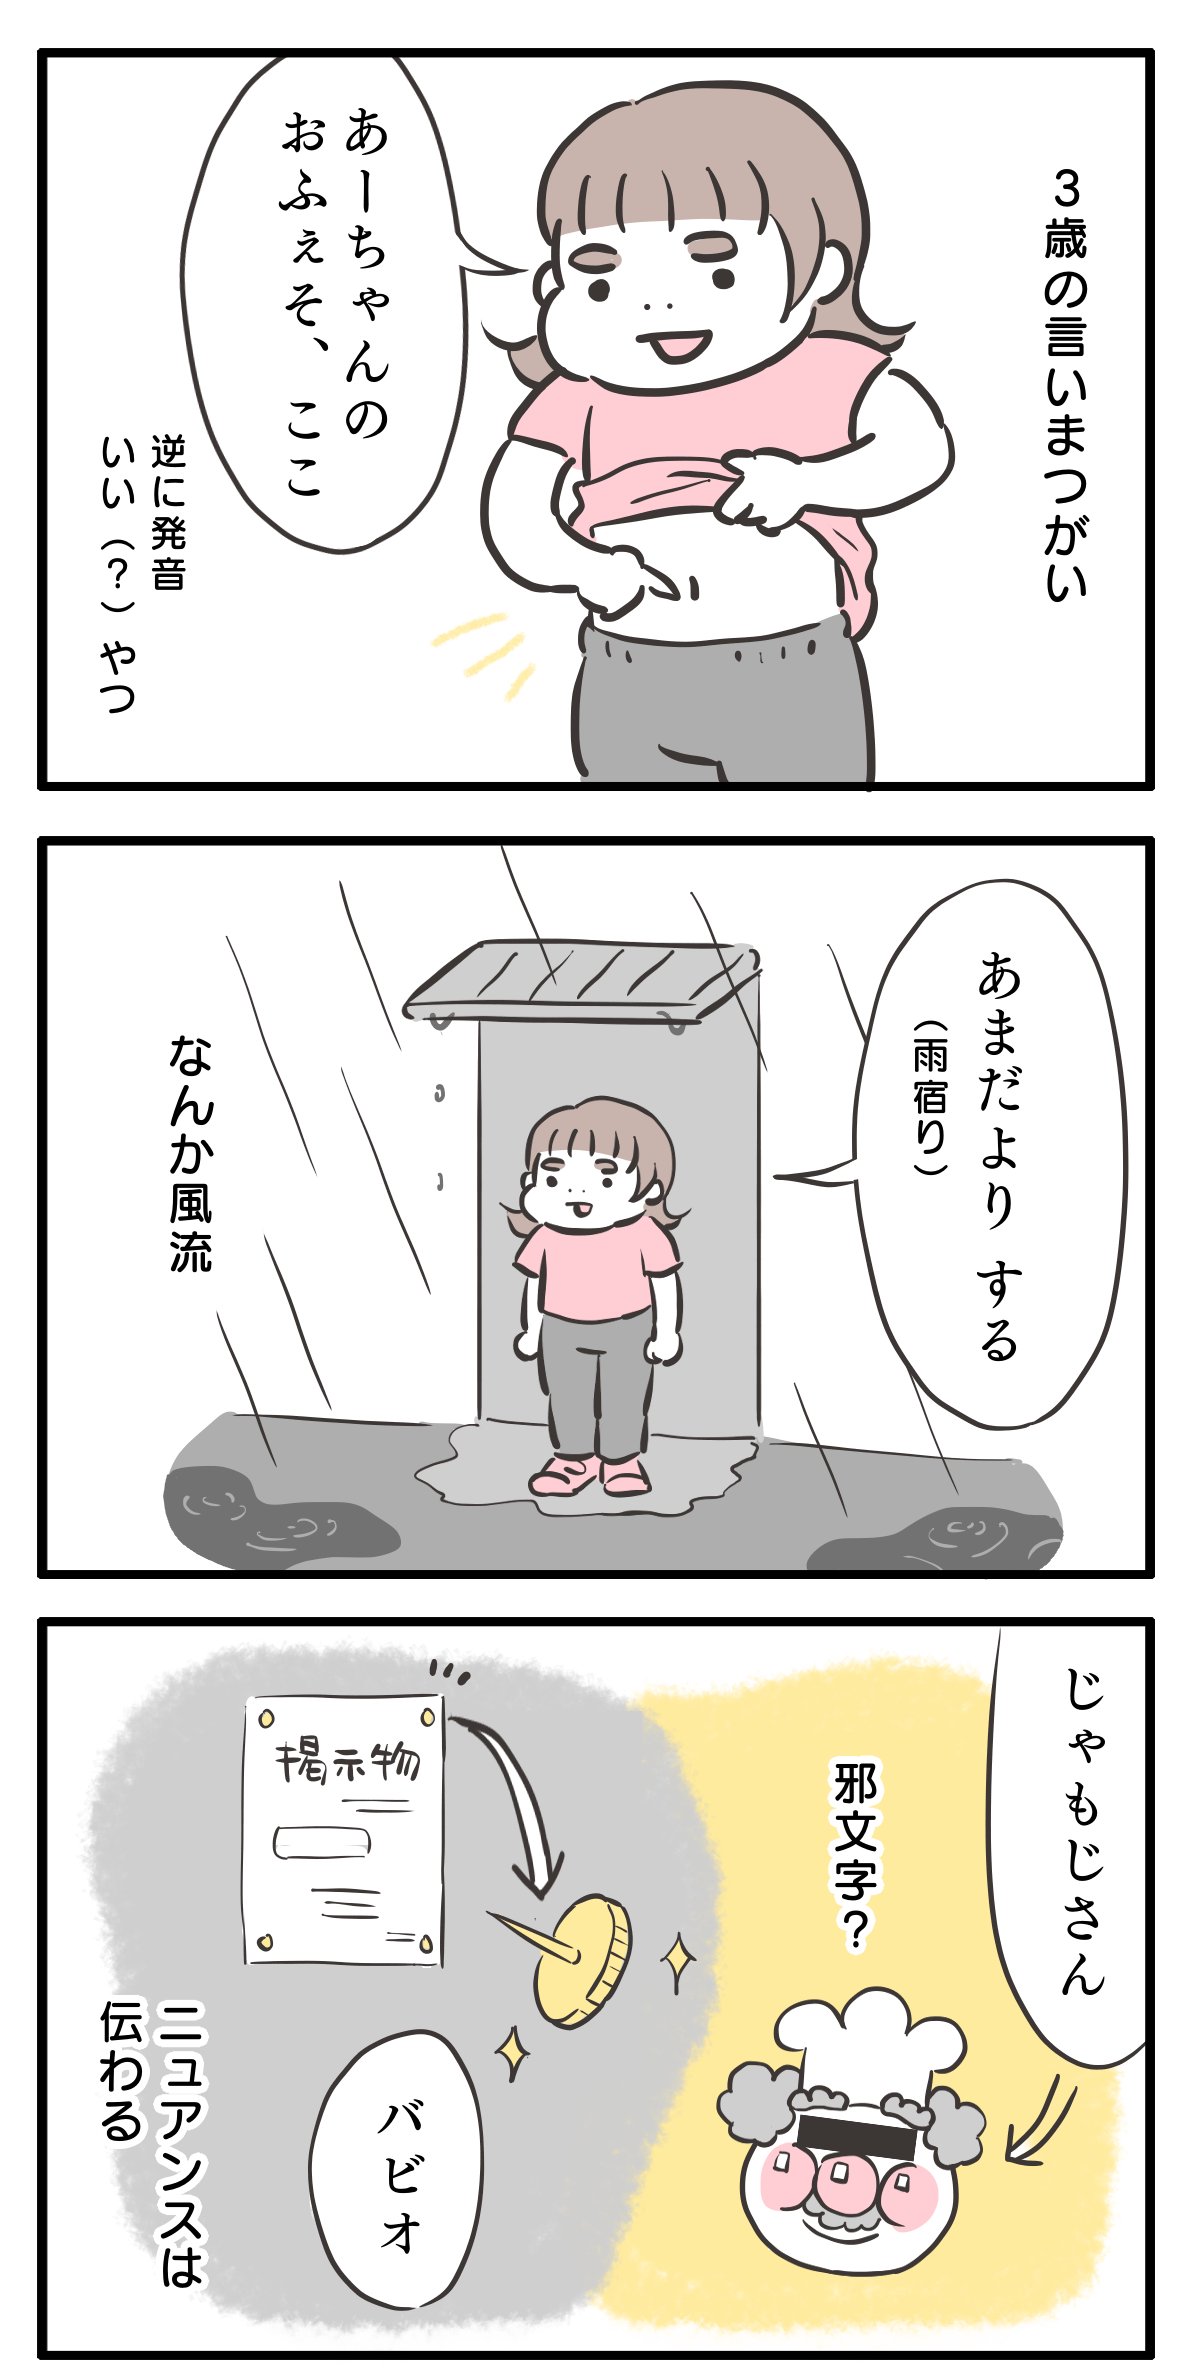 ゆるゆるみさんの漫画3